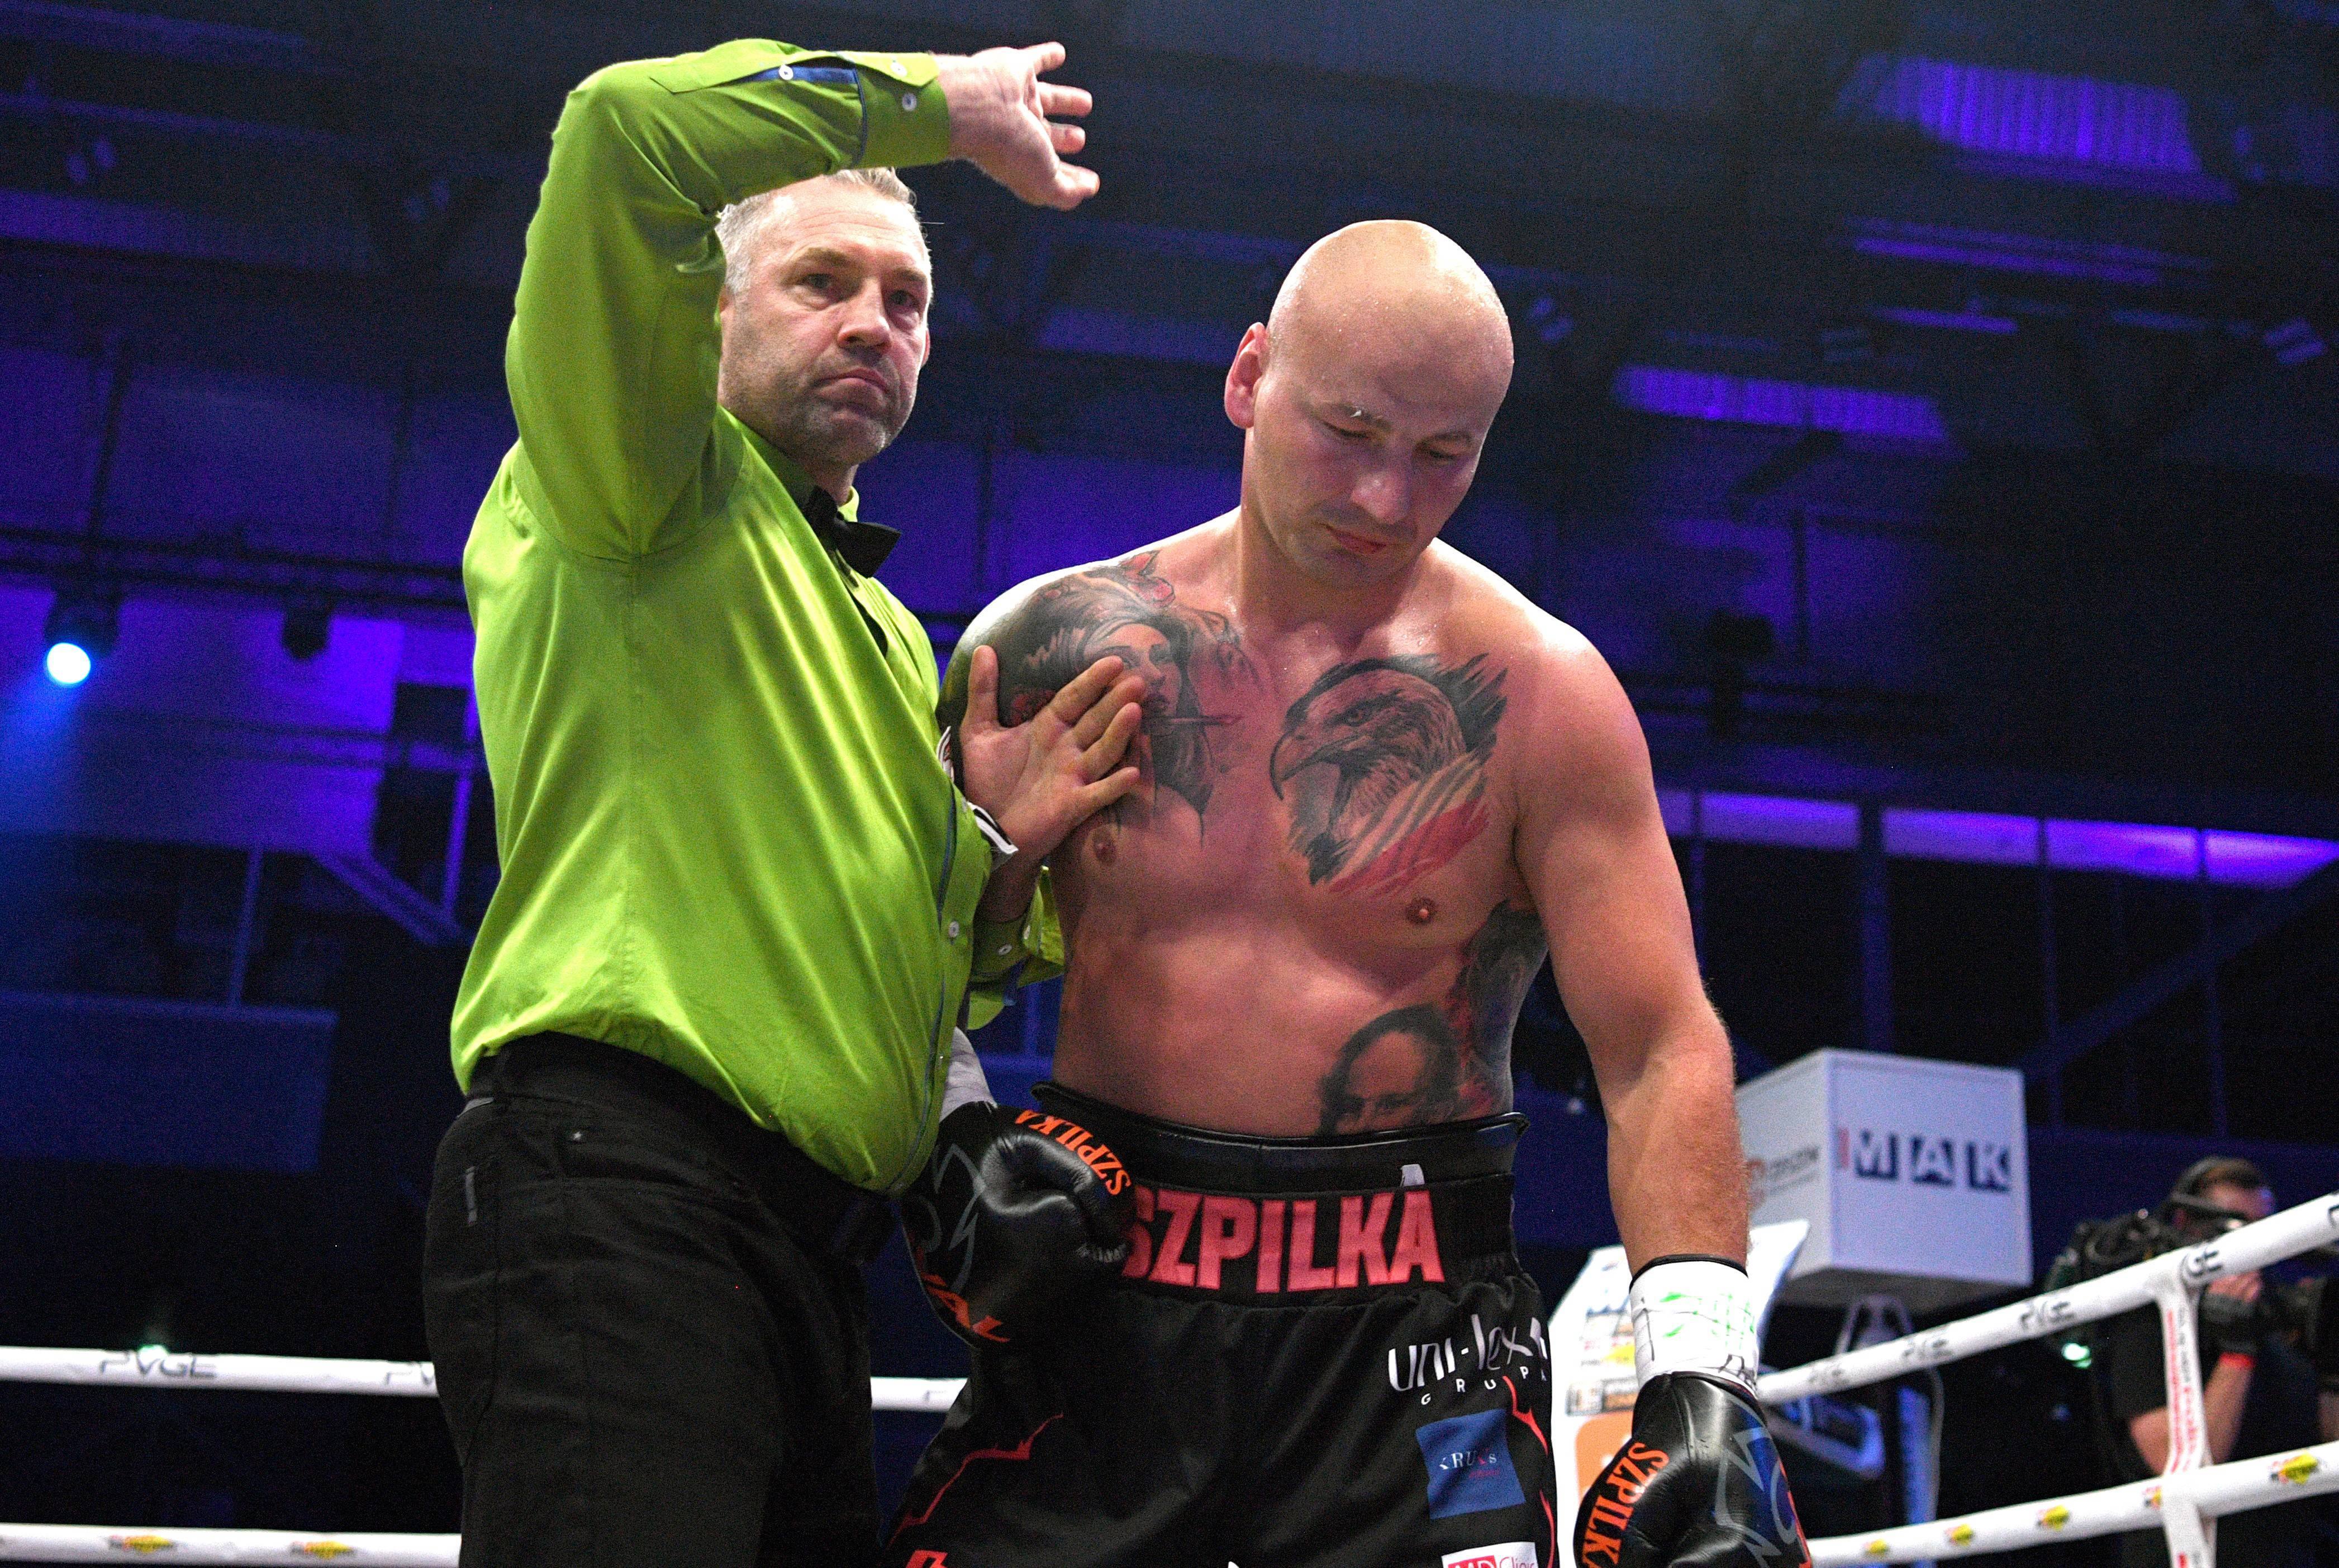 Boks: Artur Szpilka o swojej przyszłości w boksie. Szczery wywiad -  Przegląd Sportowy